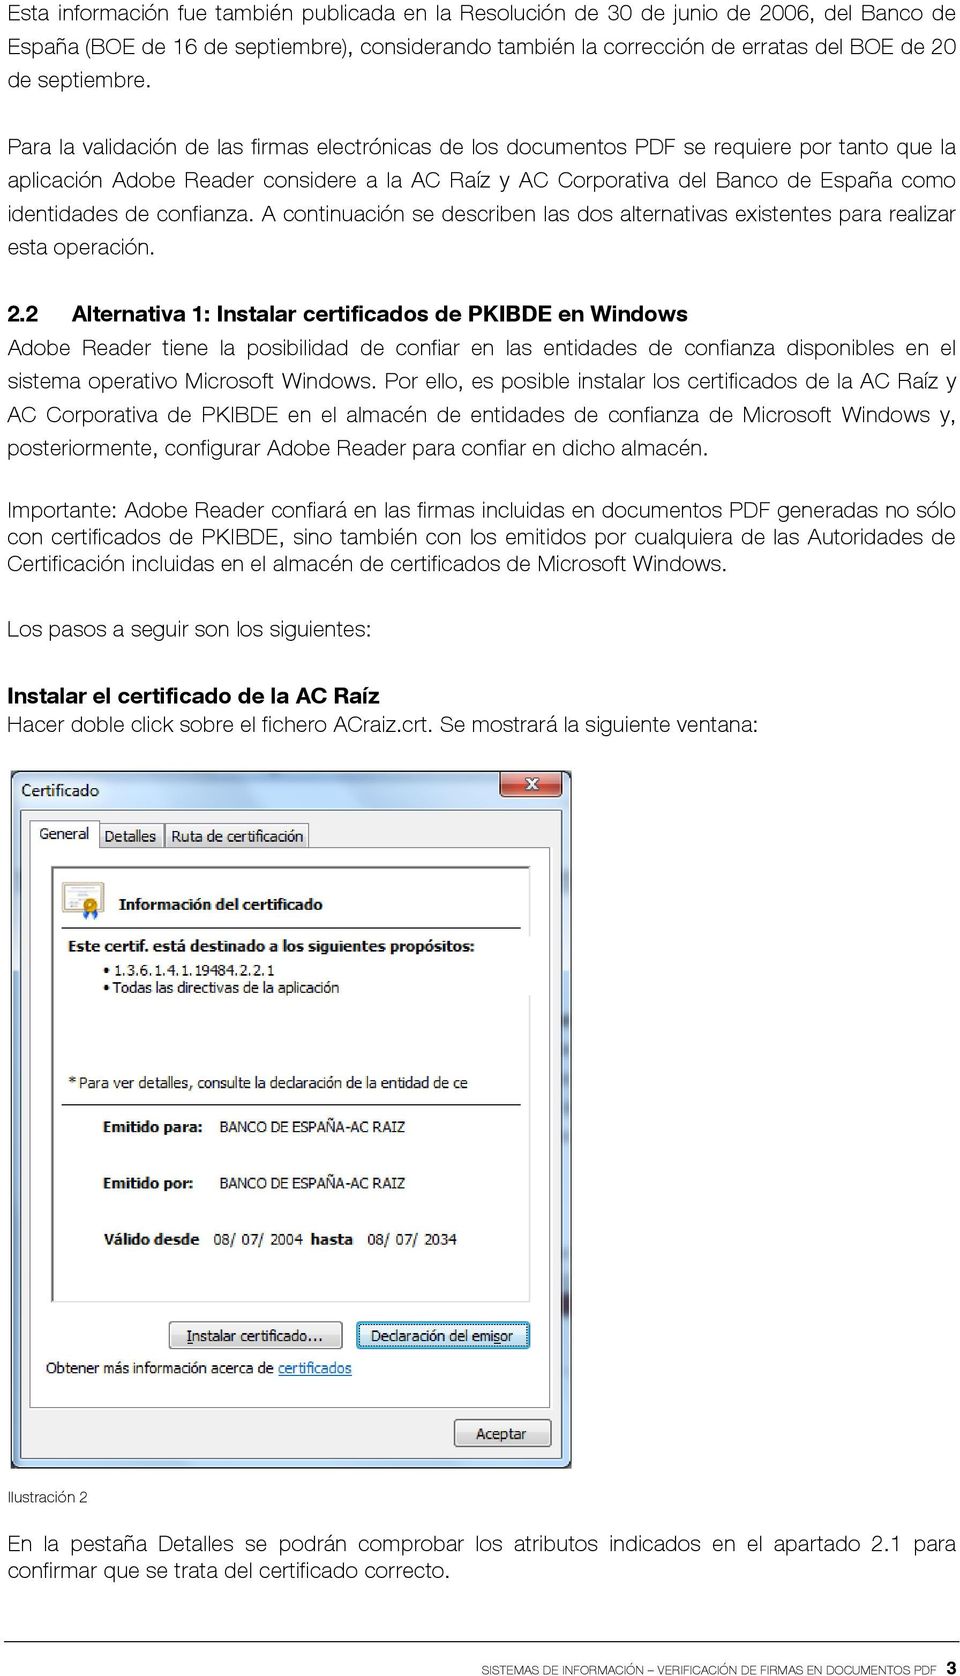 Para la validación de las firmas electrónicas de los documentos PDF se requiere por tanto que la aplicación Adobe Reader considere a la AC Raíz y AC Corporativa del Banco de España como identidades